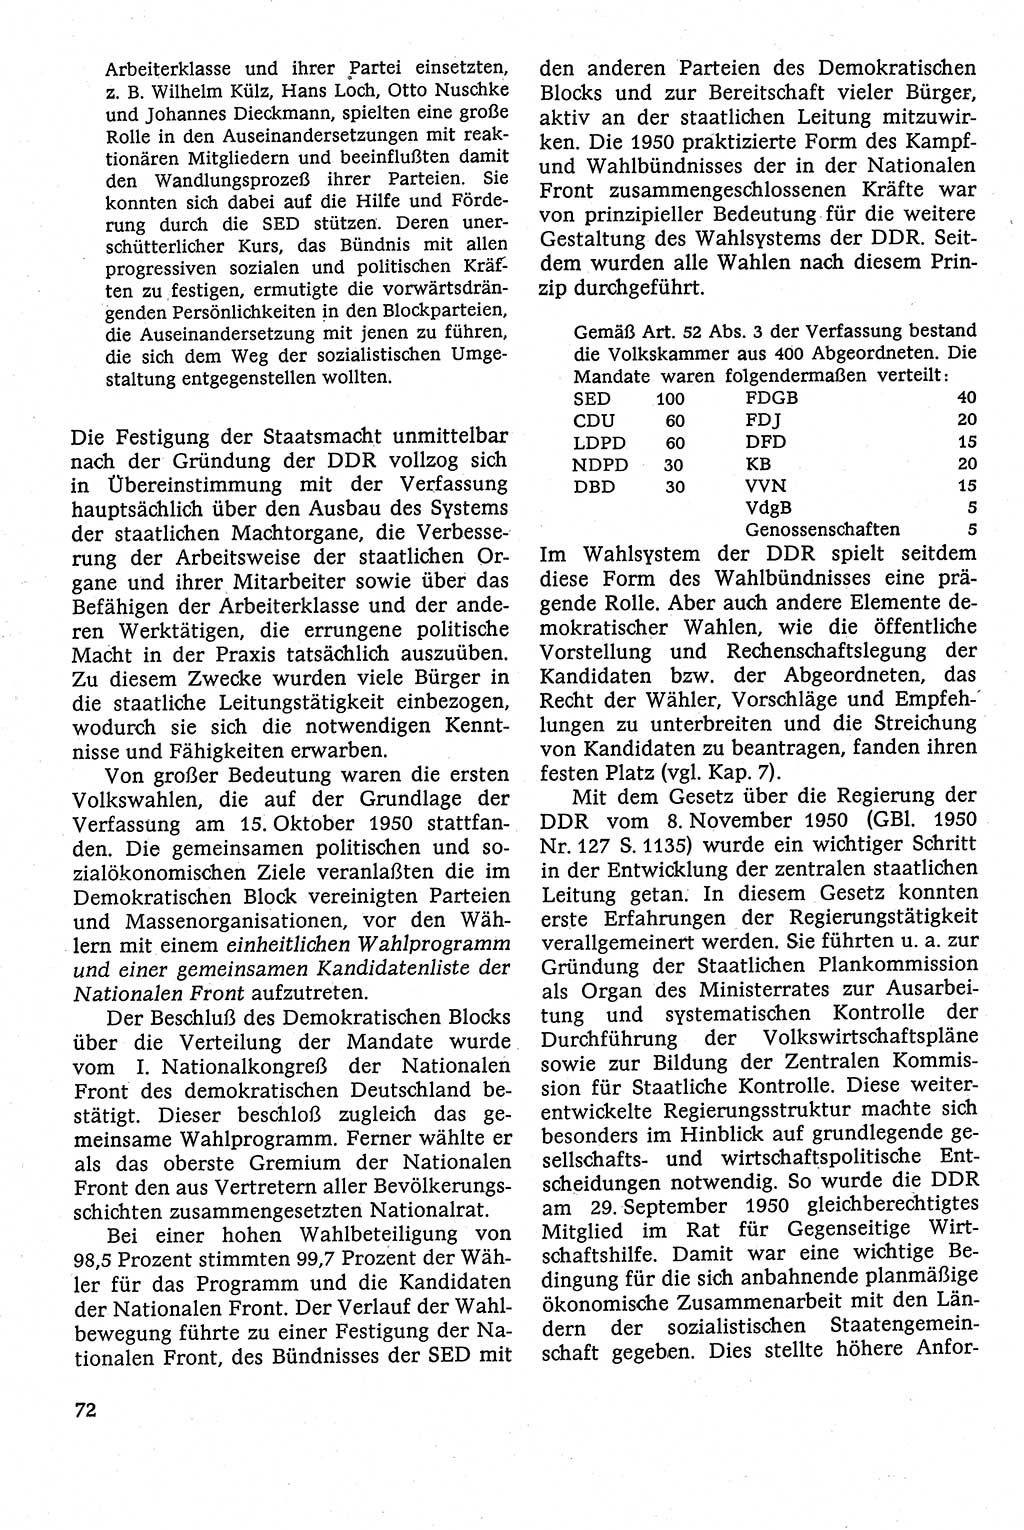 Staatsrecht der DDR [Deutsche Demokratische Republik (DDR)], Lehrbuch 1984, Seite 72 (St.-R. DDR Lb. 1984, S. 72)